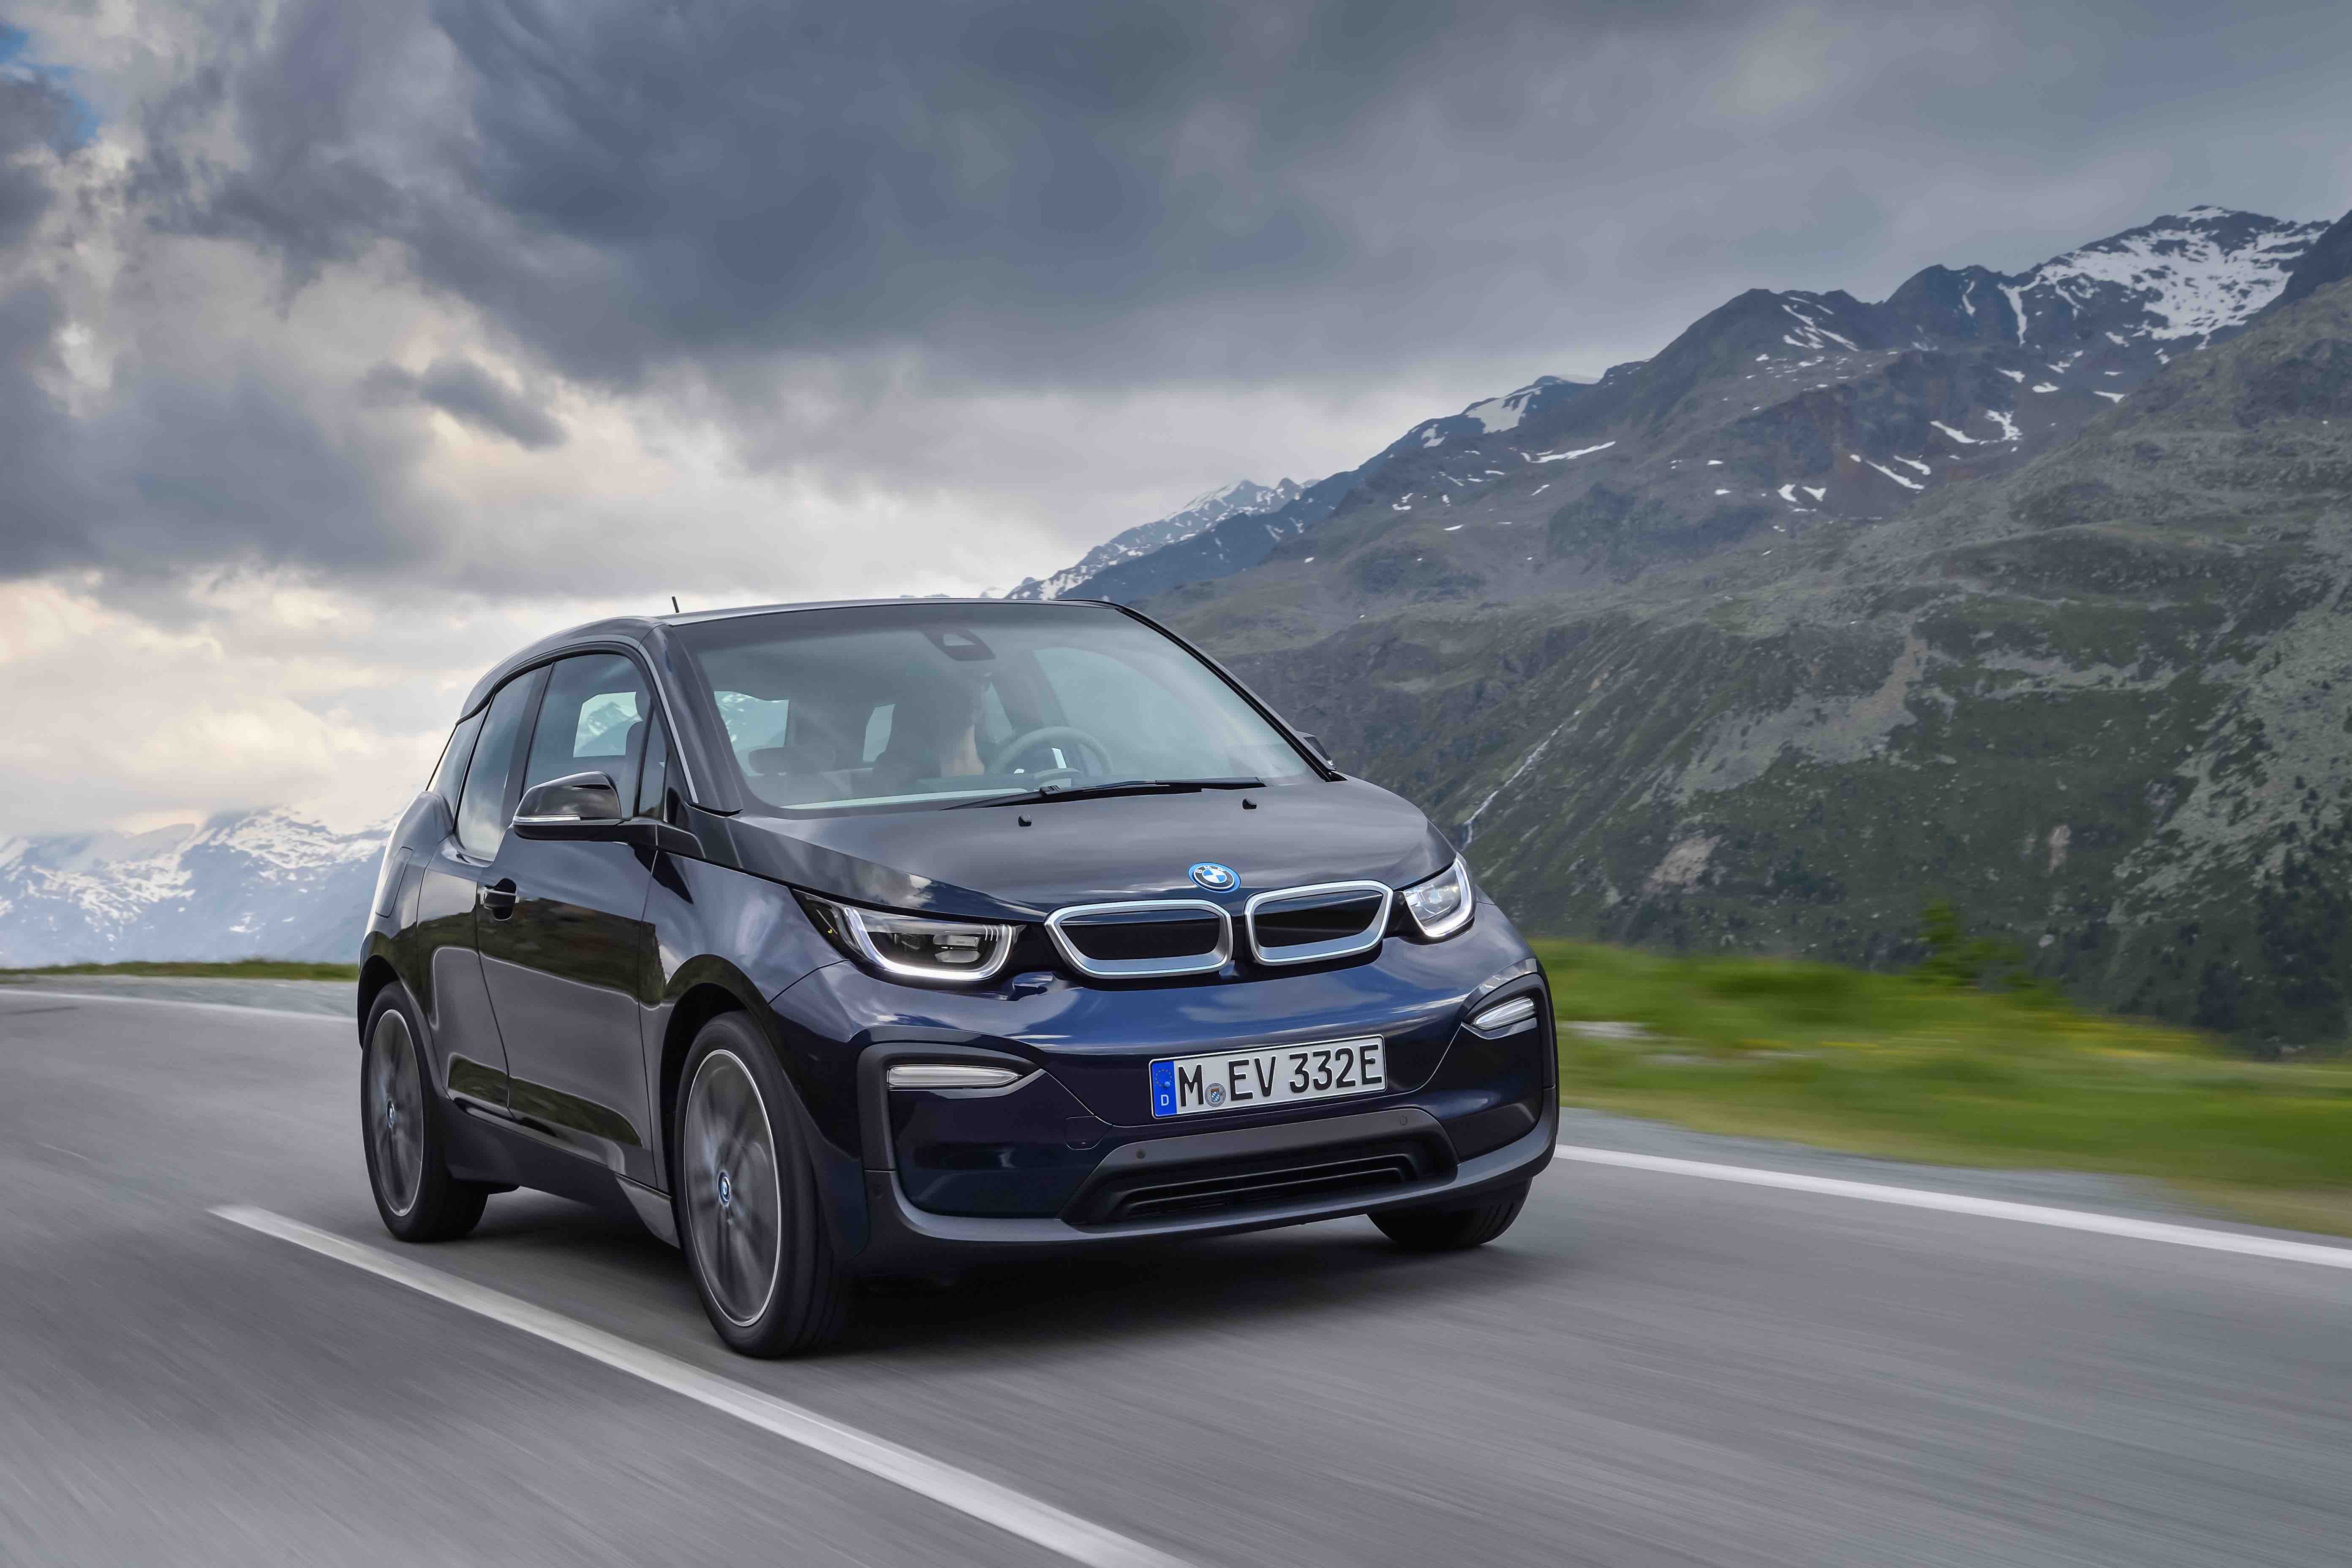 Novo BMW i3 2019 em movimento na estrada chama a atenção pela grade dupla menor e com detalhes azuis